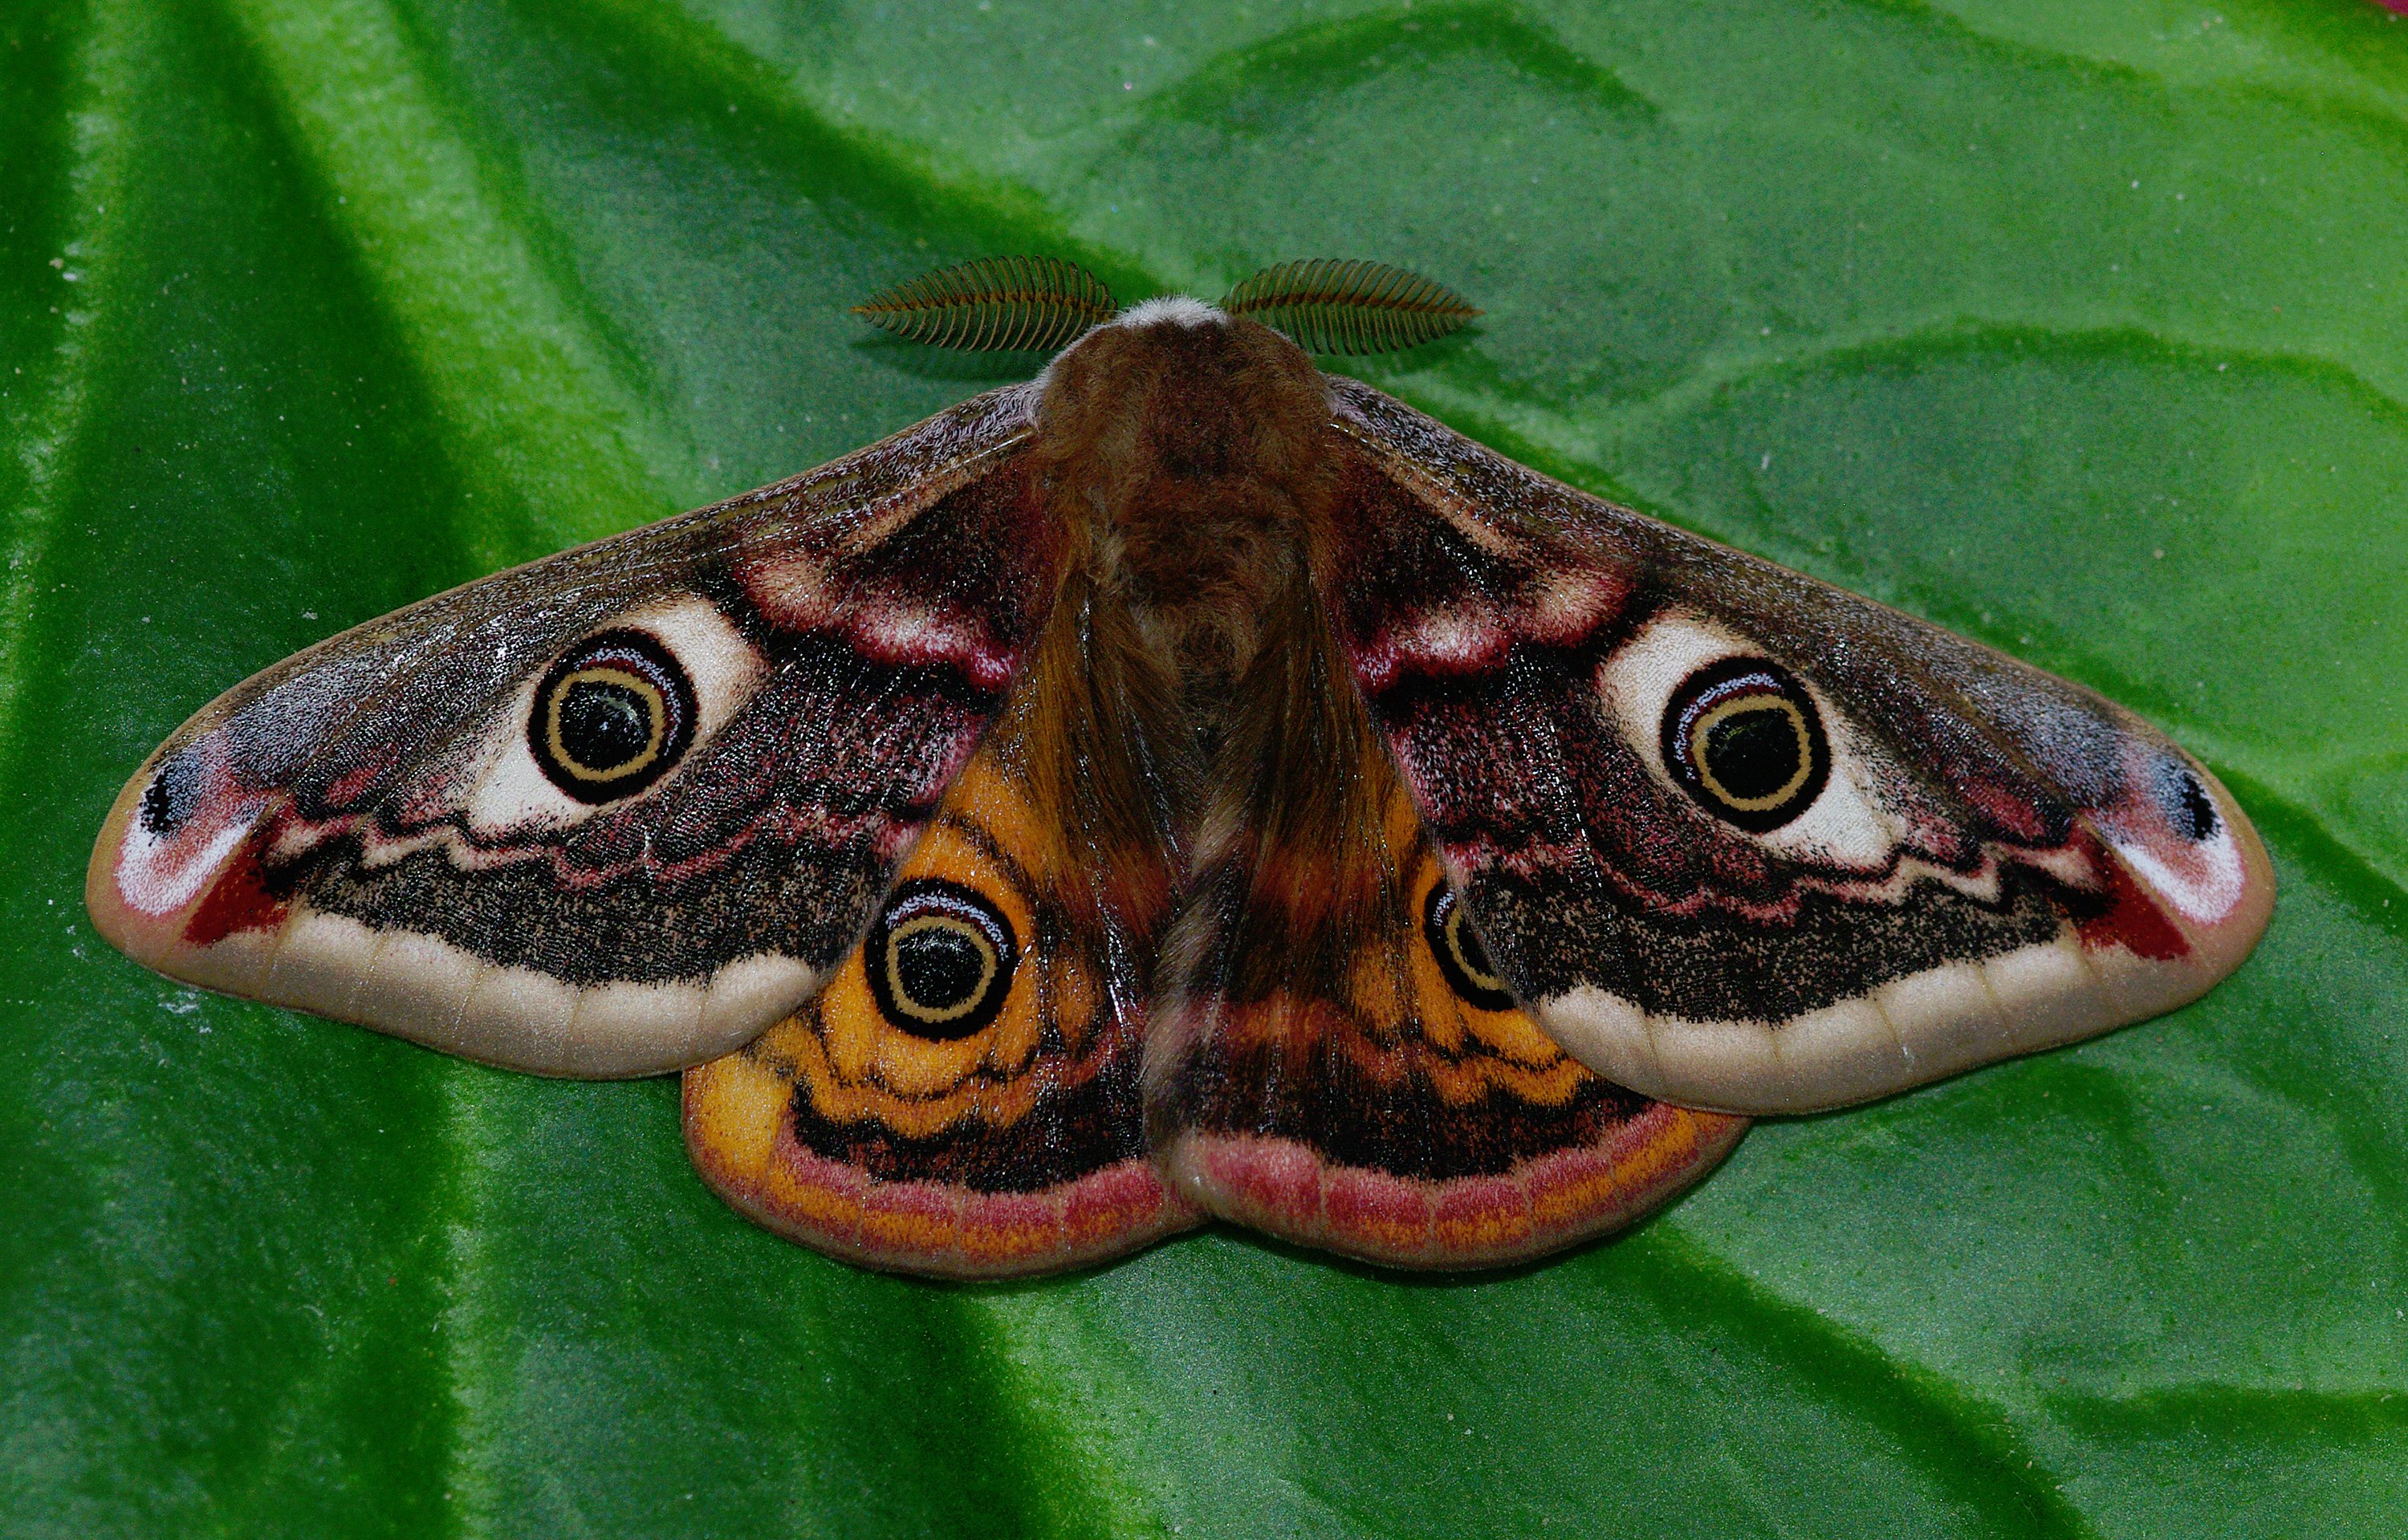 Emperor Moth Ware 8 Apr